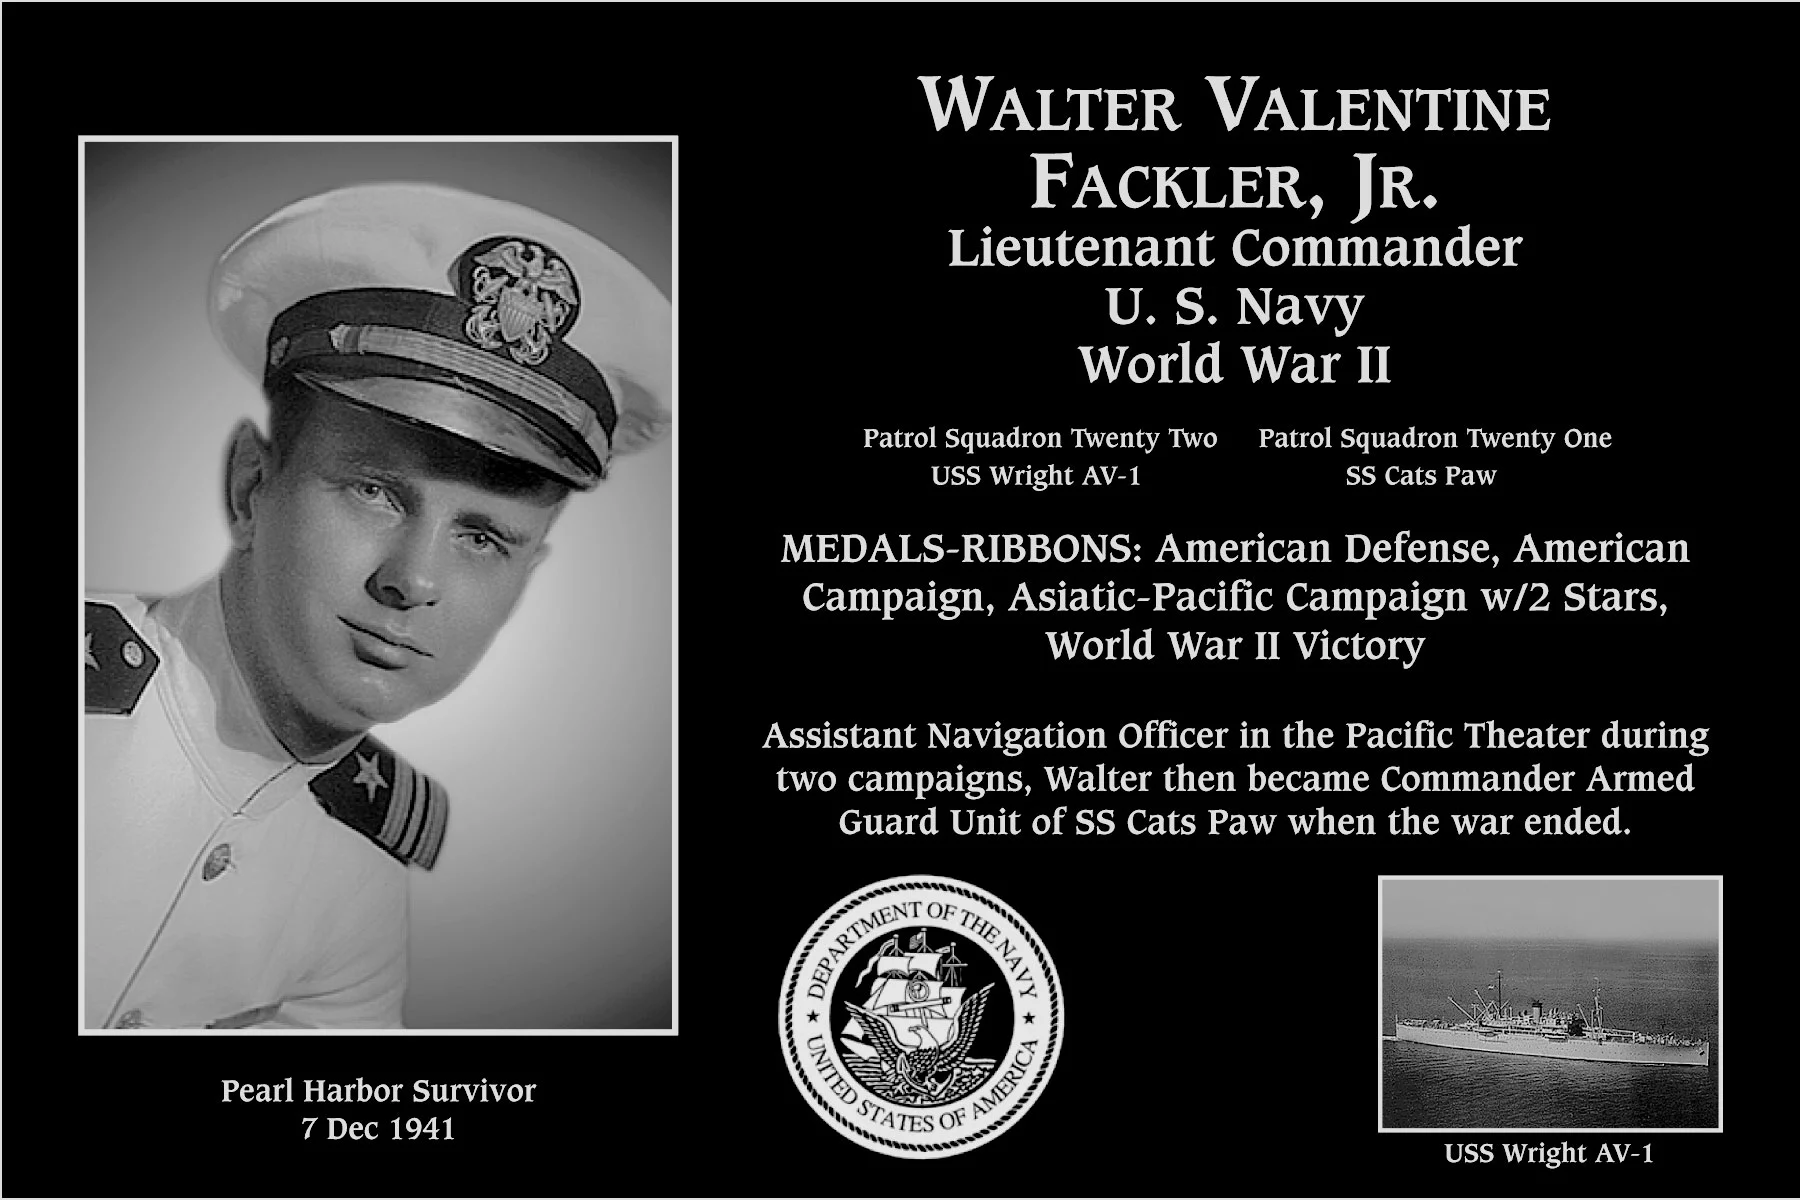 Walter Valentine Fackler jr